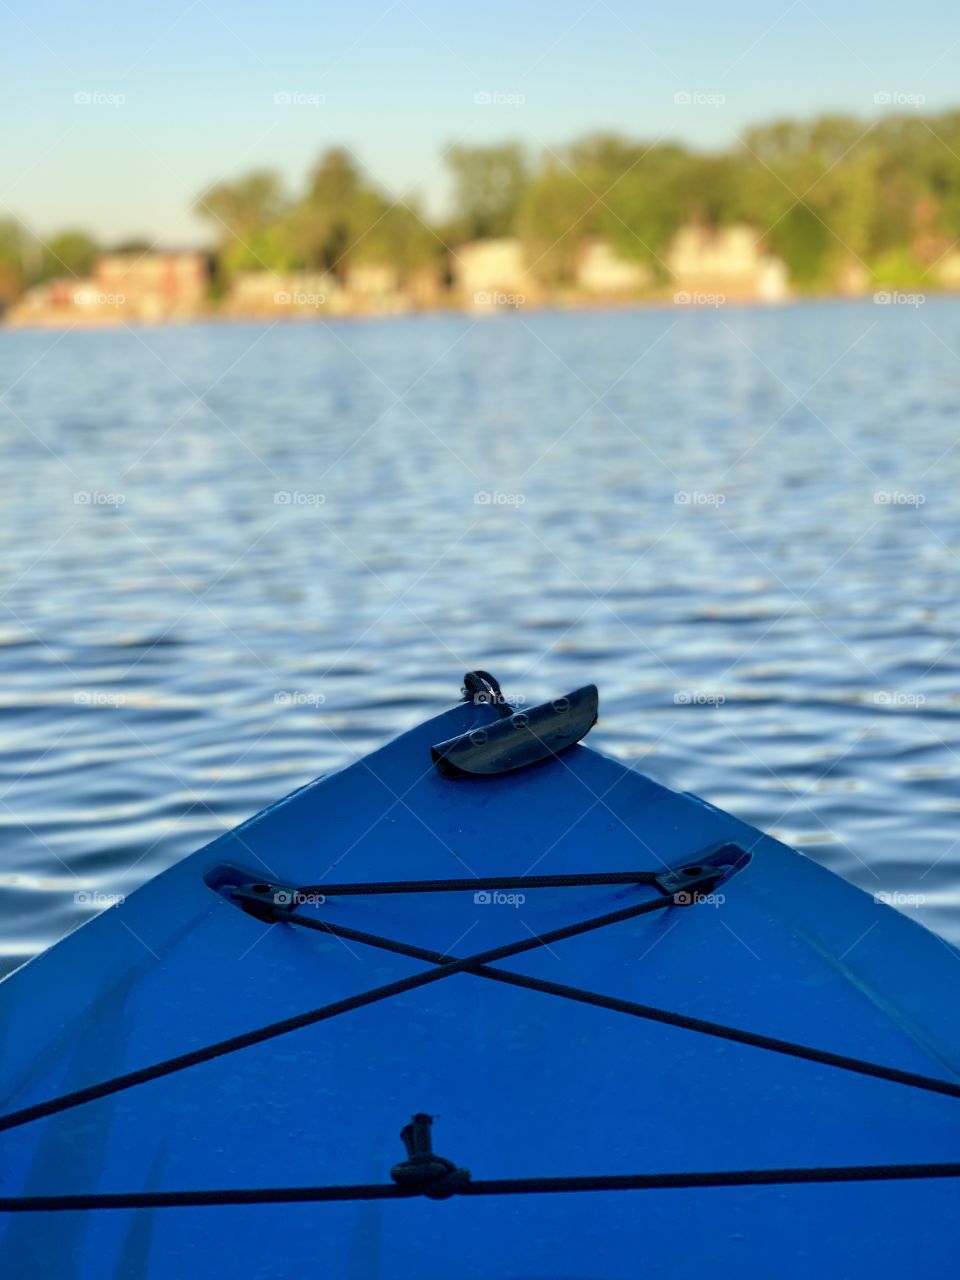 Kayaking on the Lake